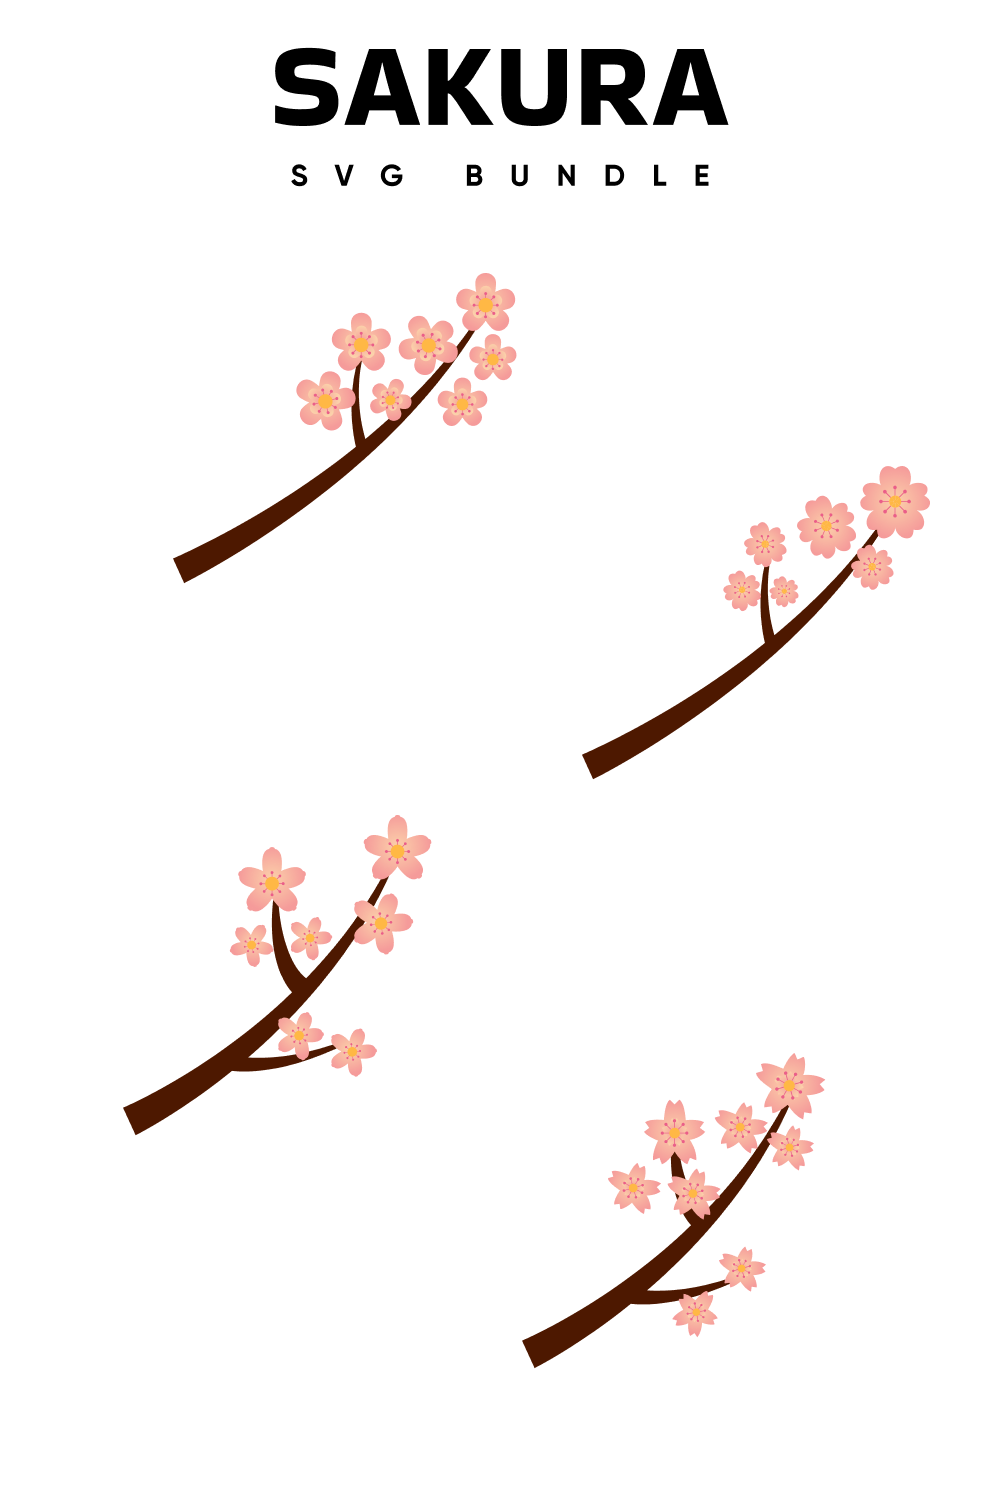 Sakura Svg Free - Pinterest.